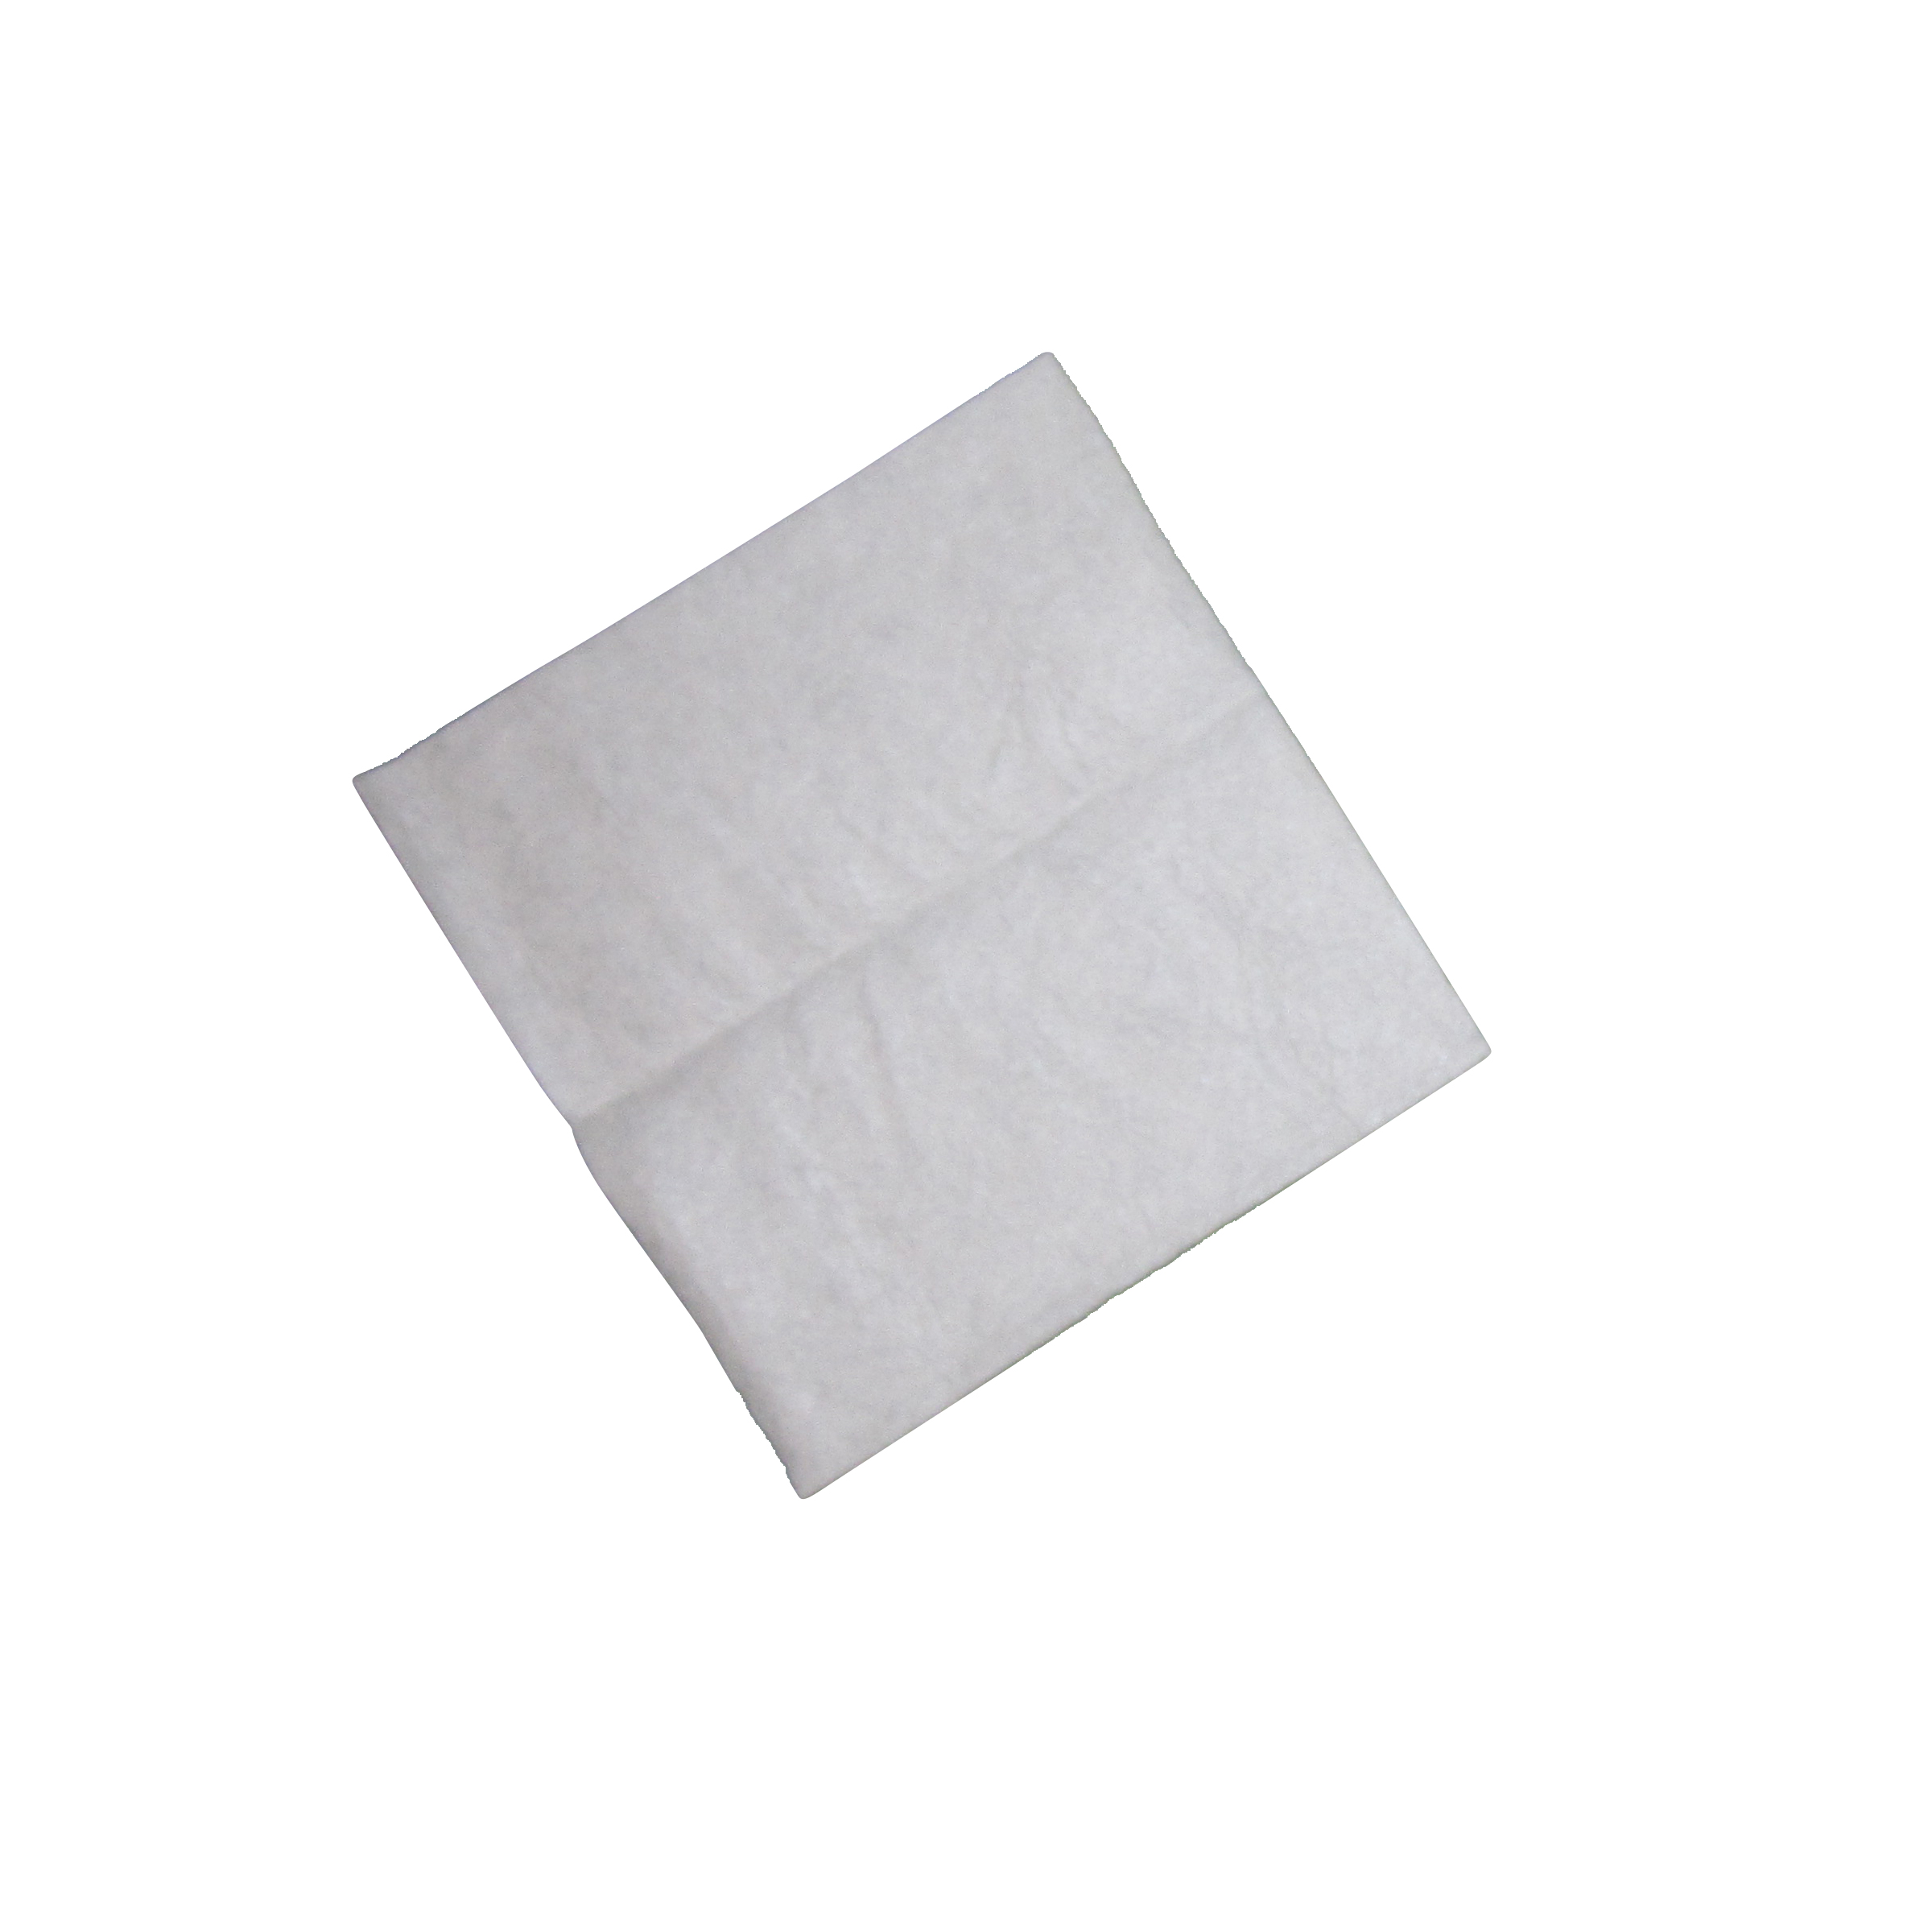 Tuch für Lederpflege (2 Stk. 1/4 Tuch) - Tuch zur Leder Reinigung und aufbringen von Pflegemitteln